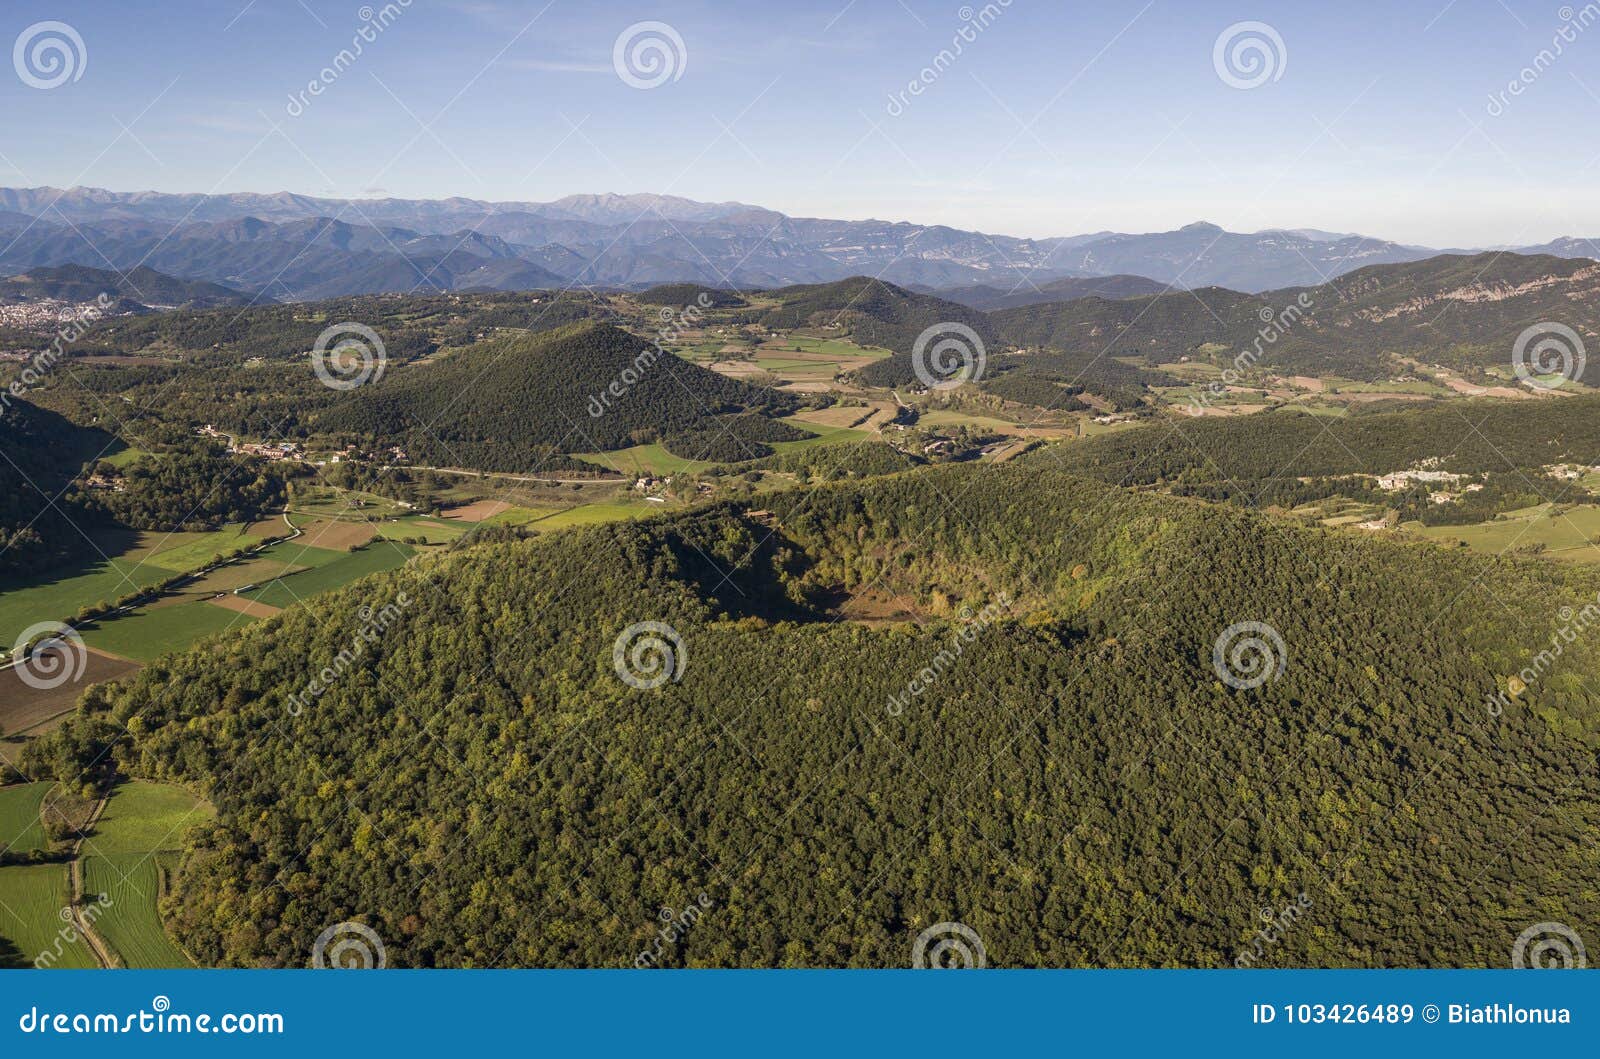 [Image: aerial-view-garrotxa-volcanic-zone-natur...426489.jpg]